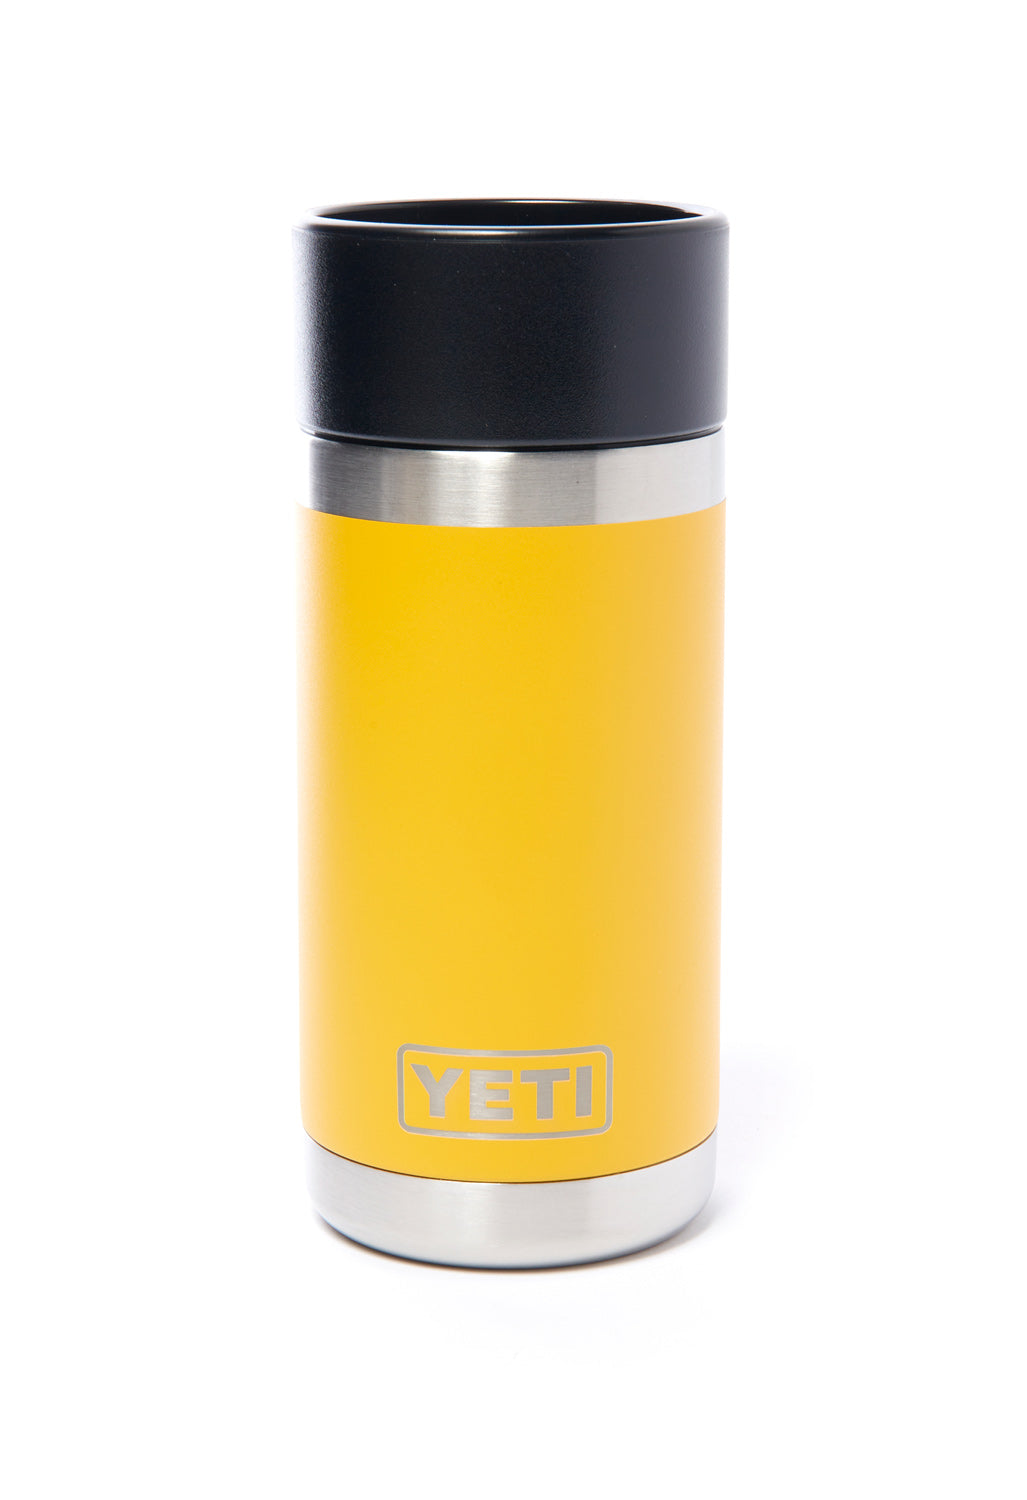 Yeti Bottle with HotShot Cap – Alys Shoppe